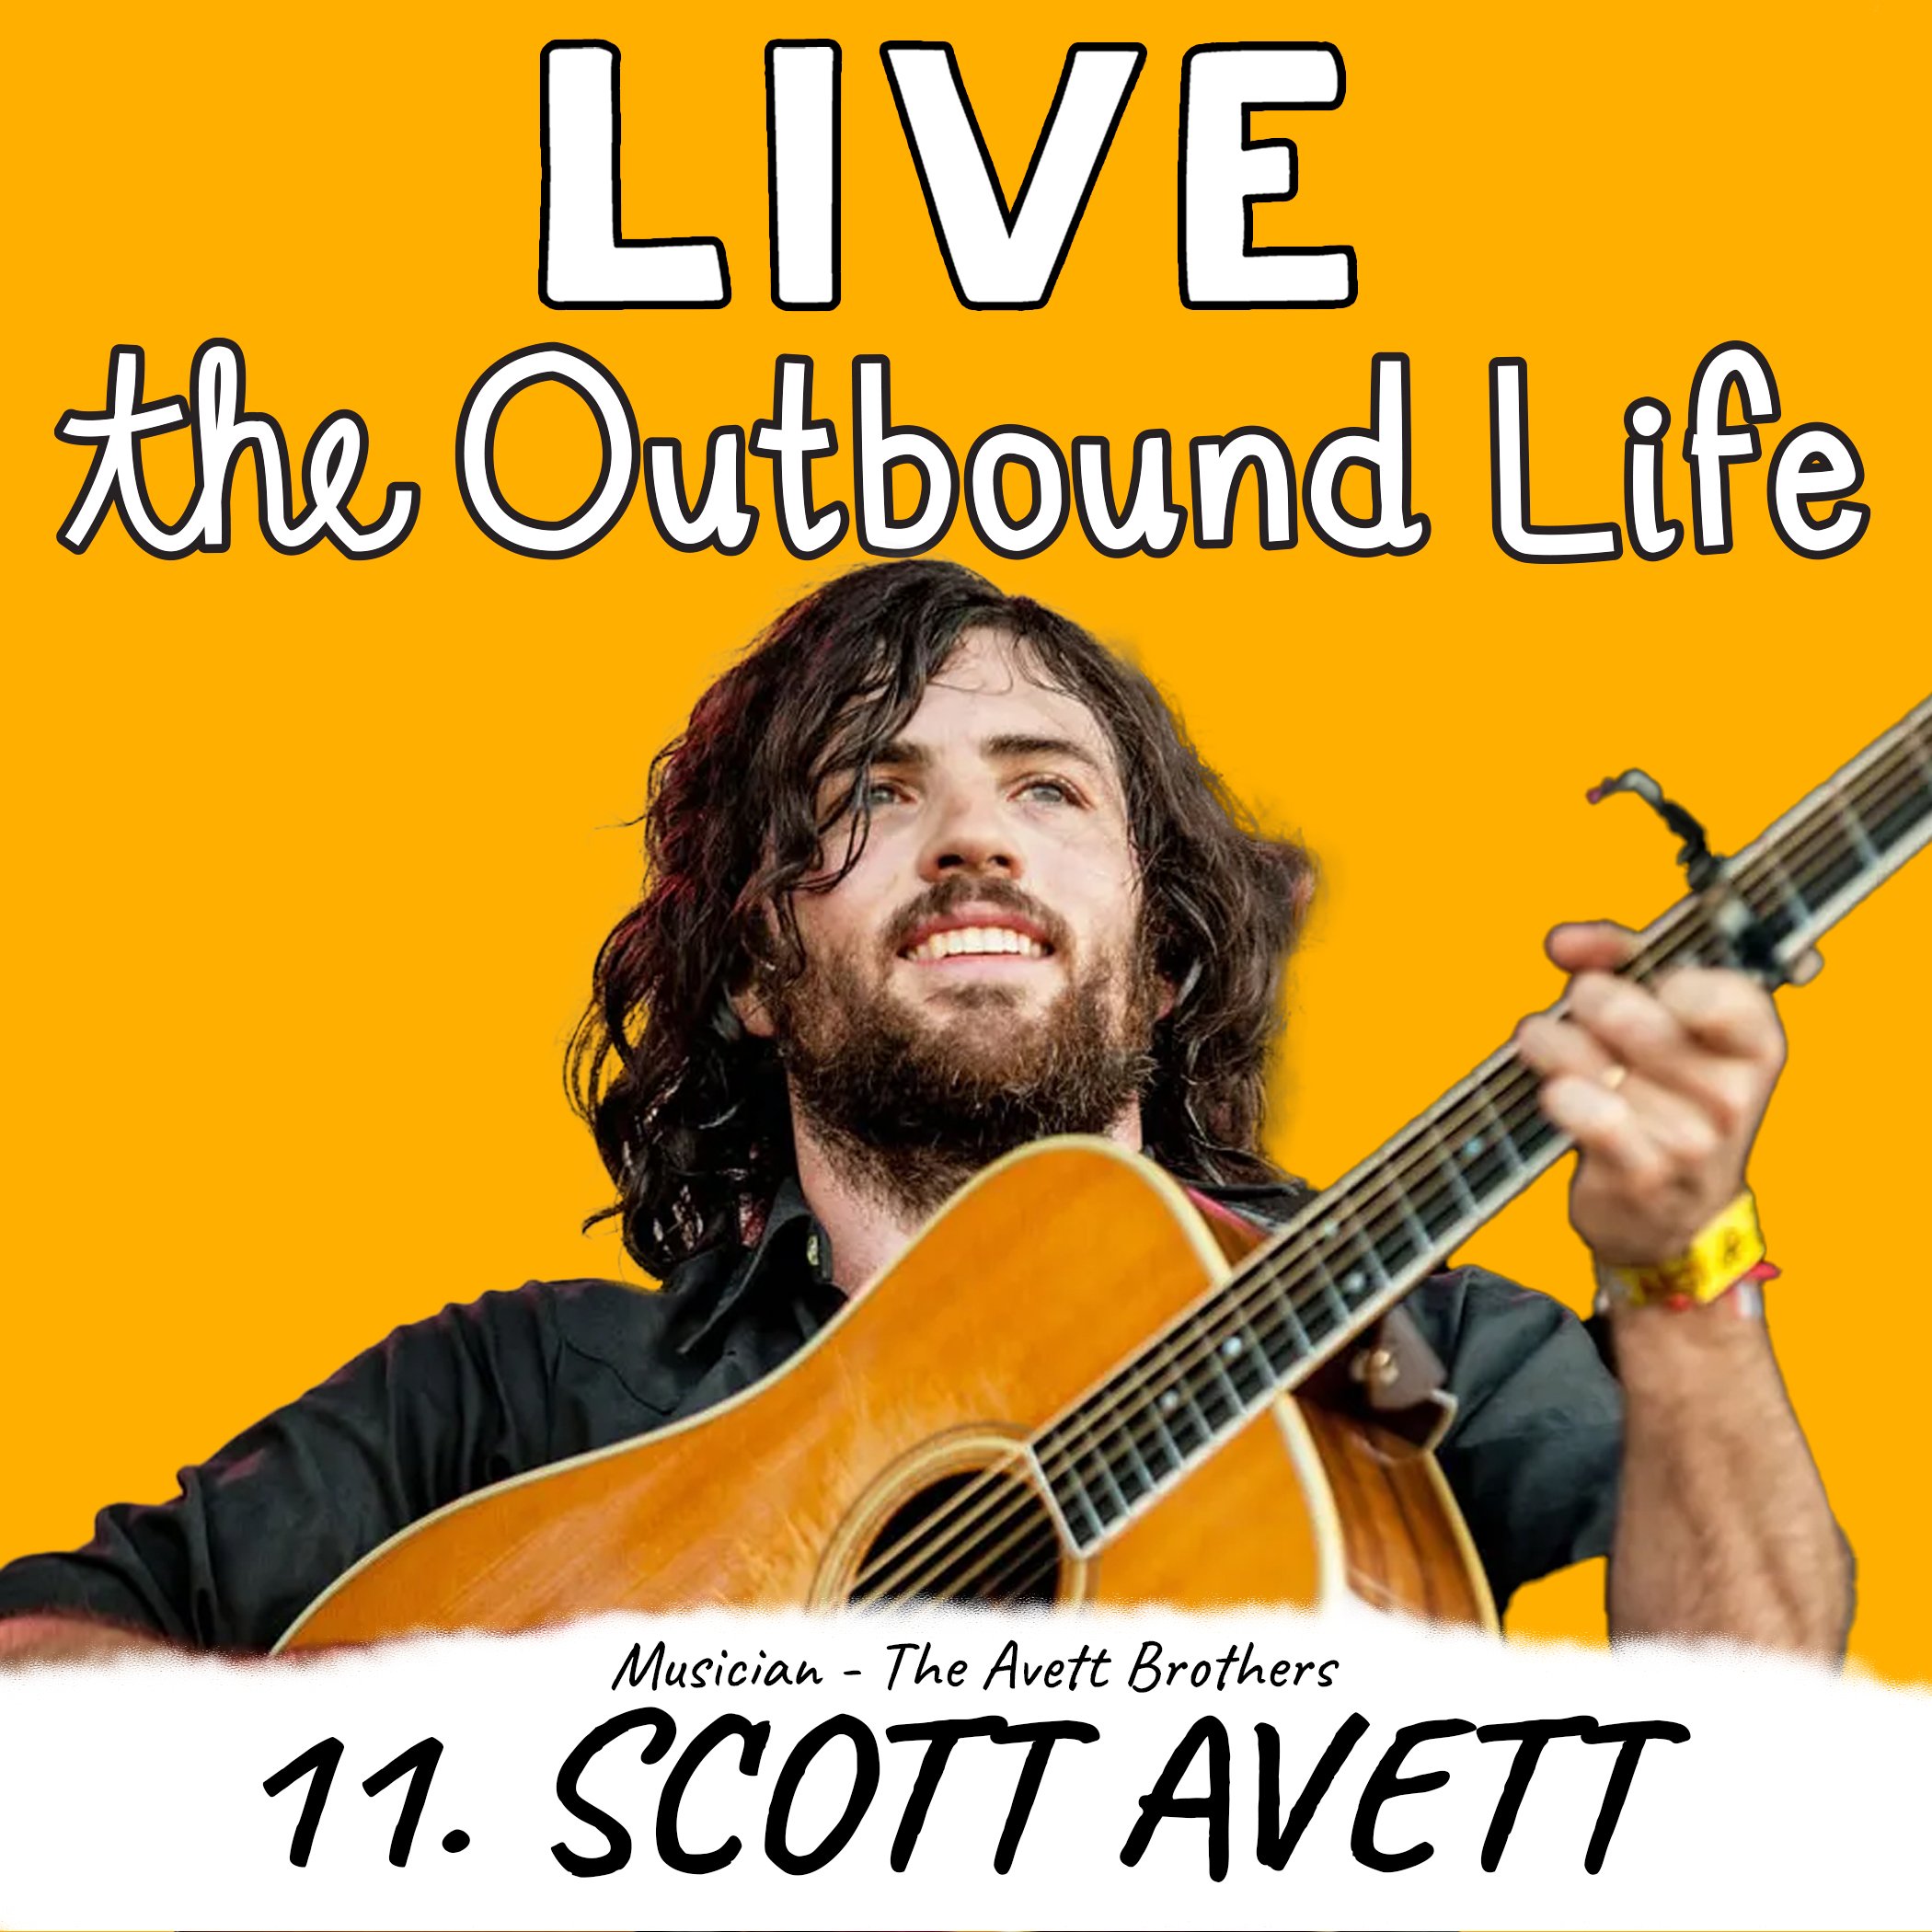 Scott Avett The Avett Brothers Kyler McCormick Kody McCormick The Outbound Life podcast